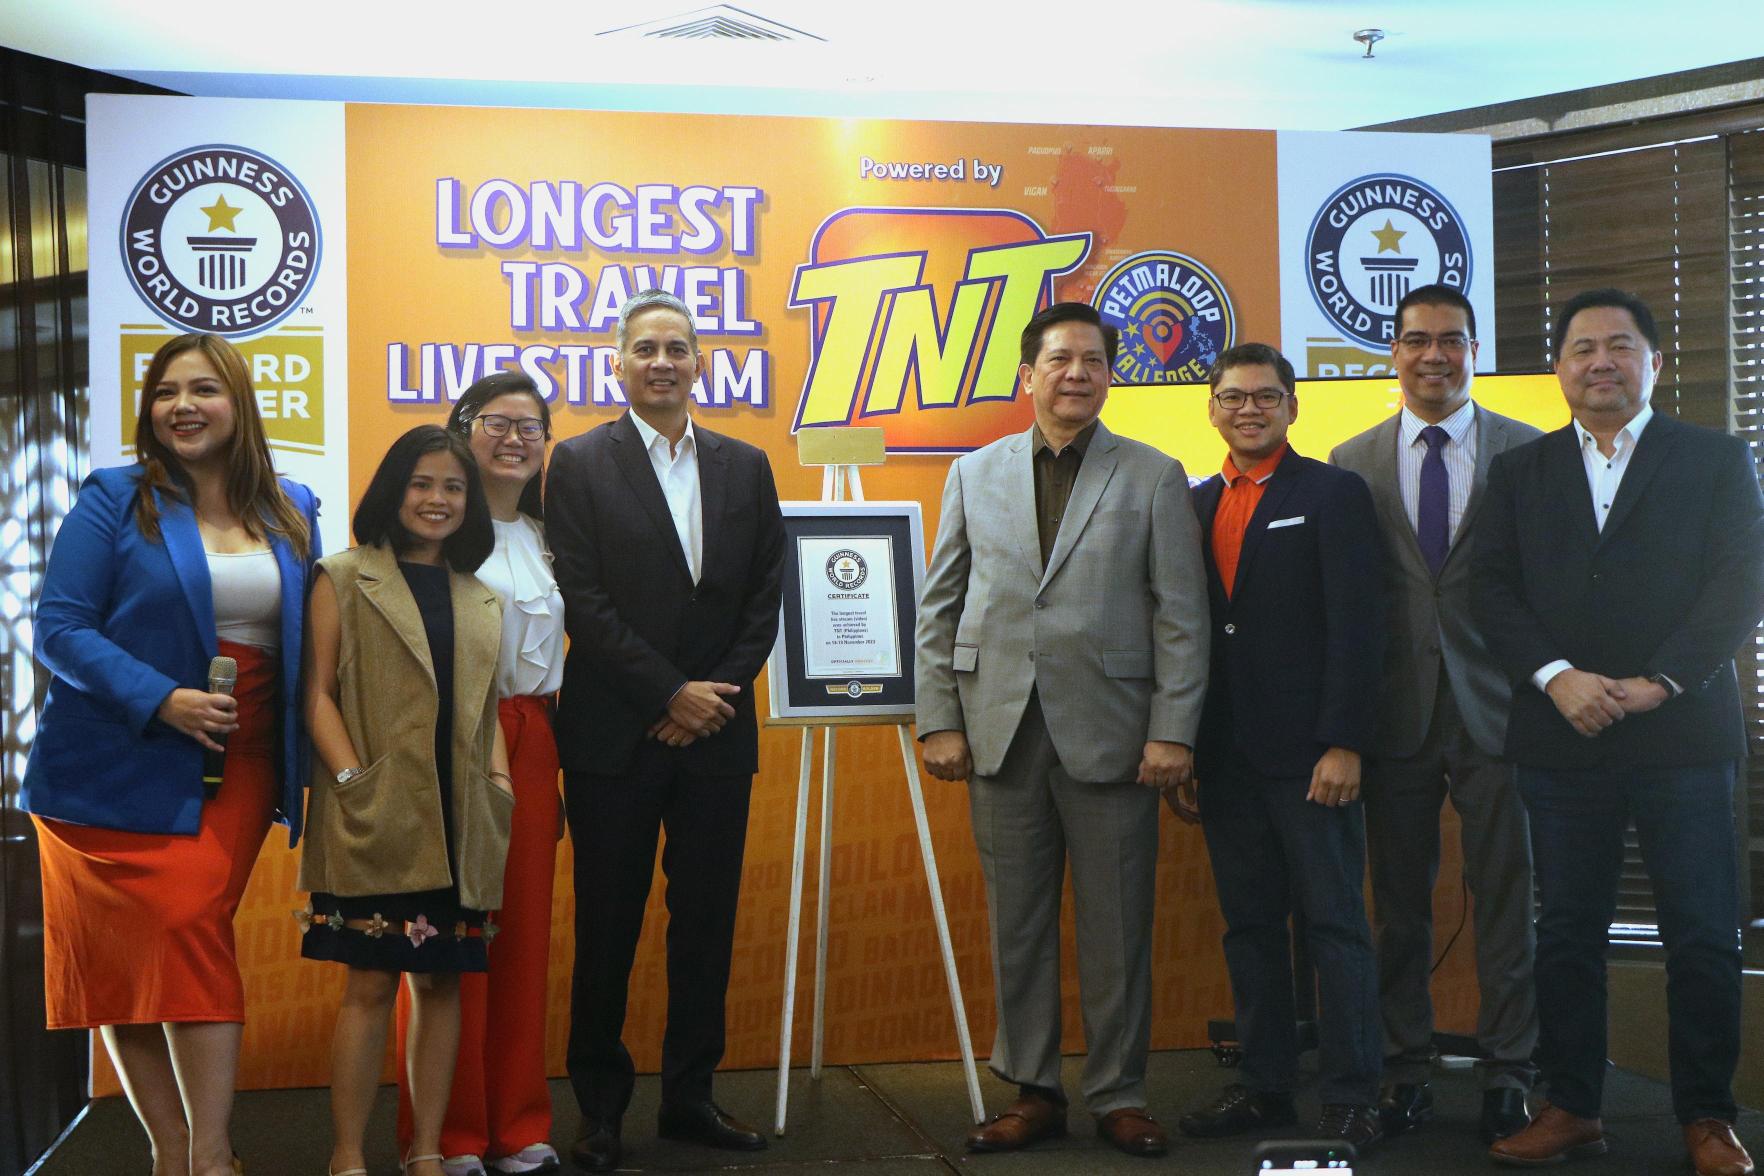 TNT Guinness World Record Longest Travel Livestream